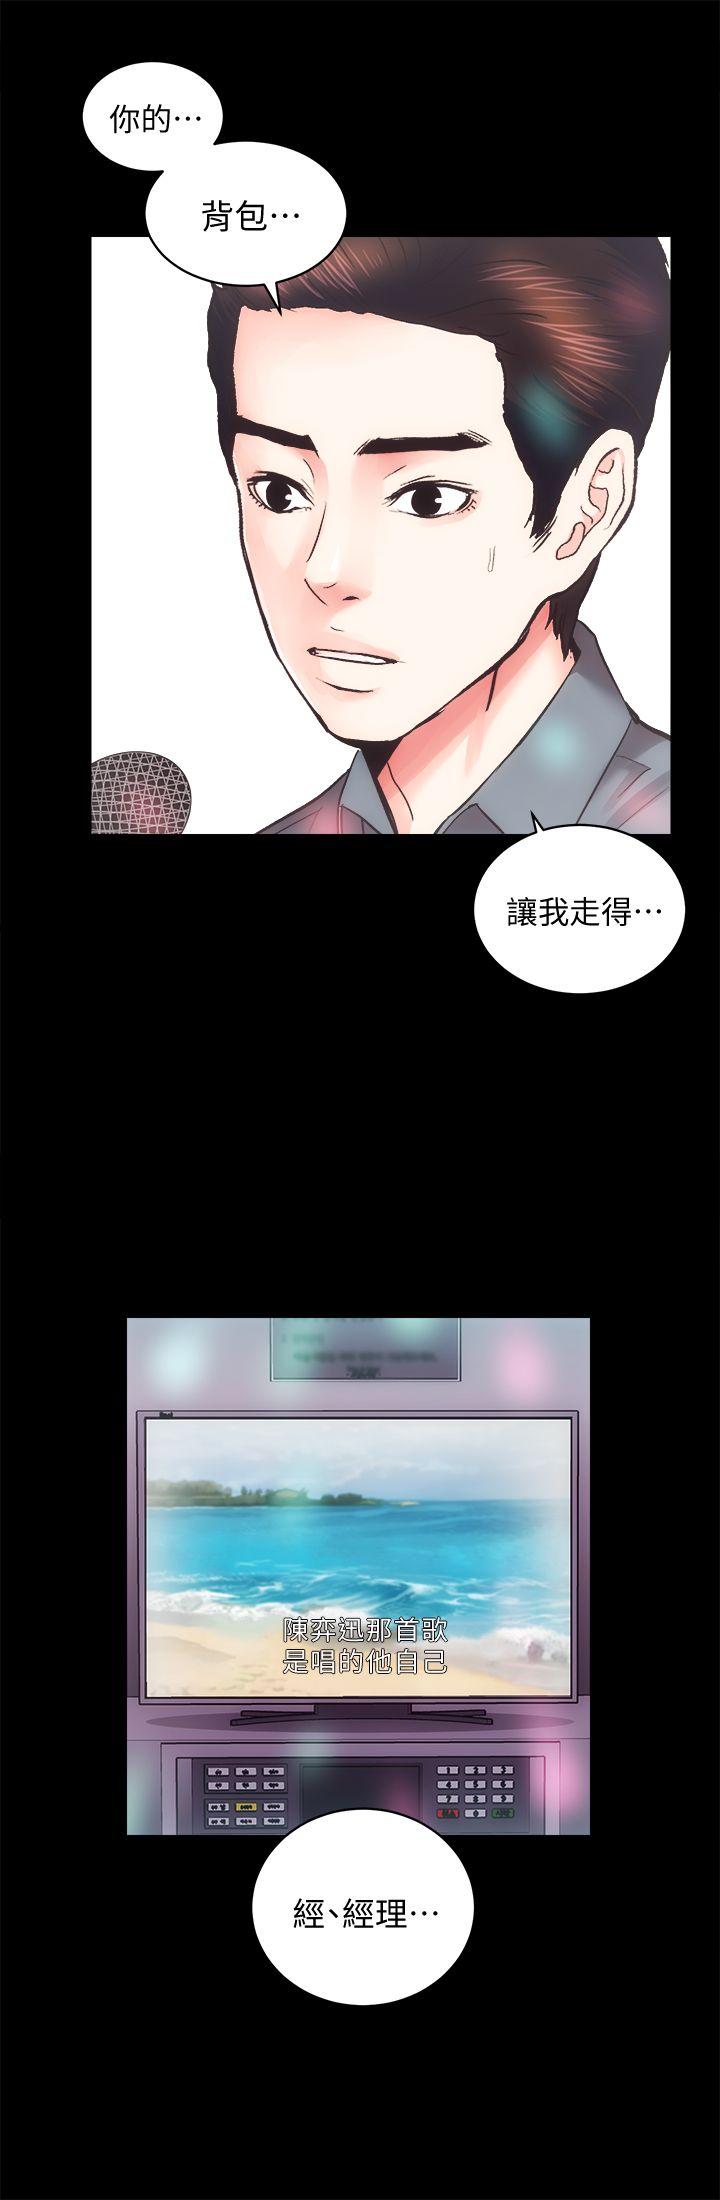 《性溢房屋》漫画 第23话 - KTV传播妹